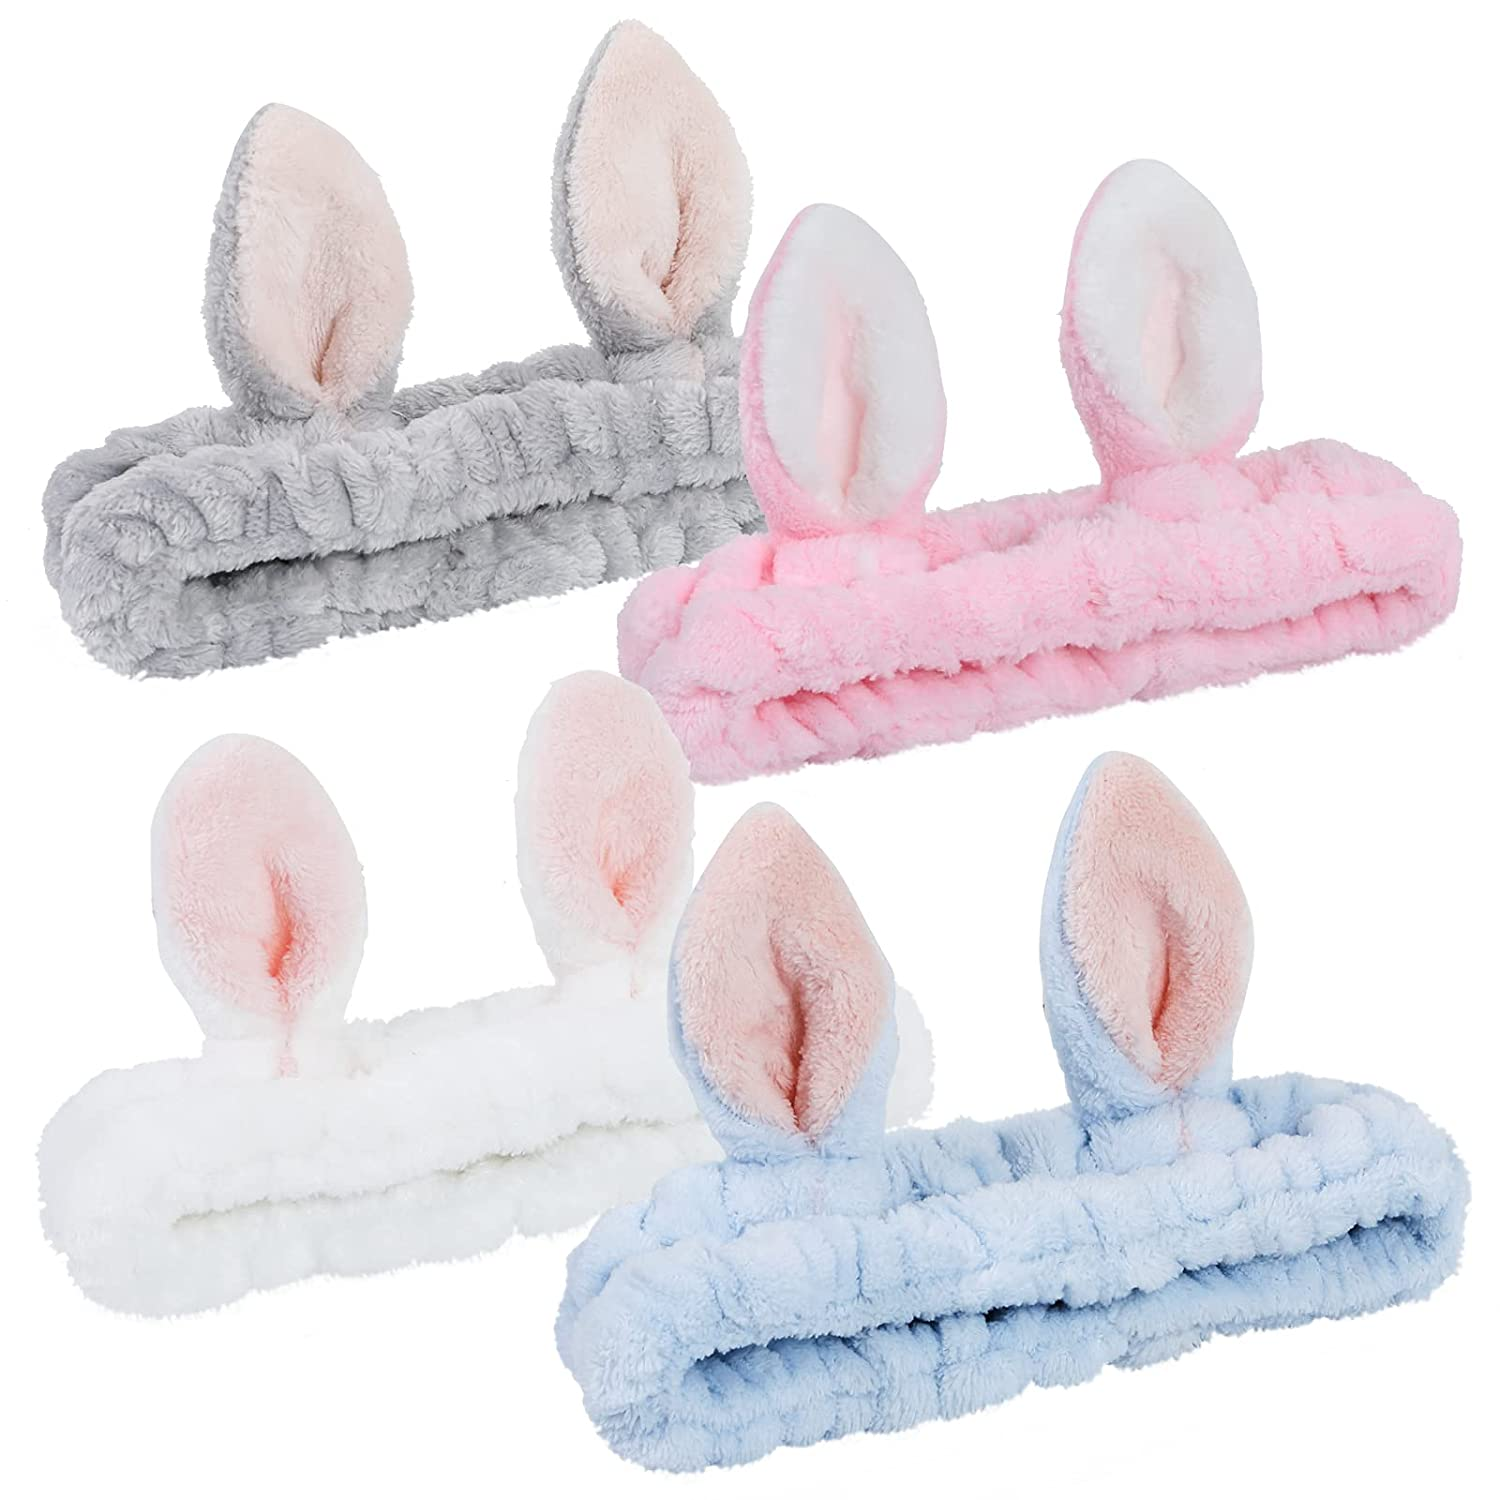 Makiyaj Spa Bando pou fanm Bunny Ears Head Wraps